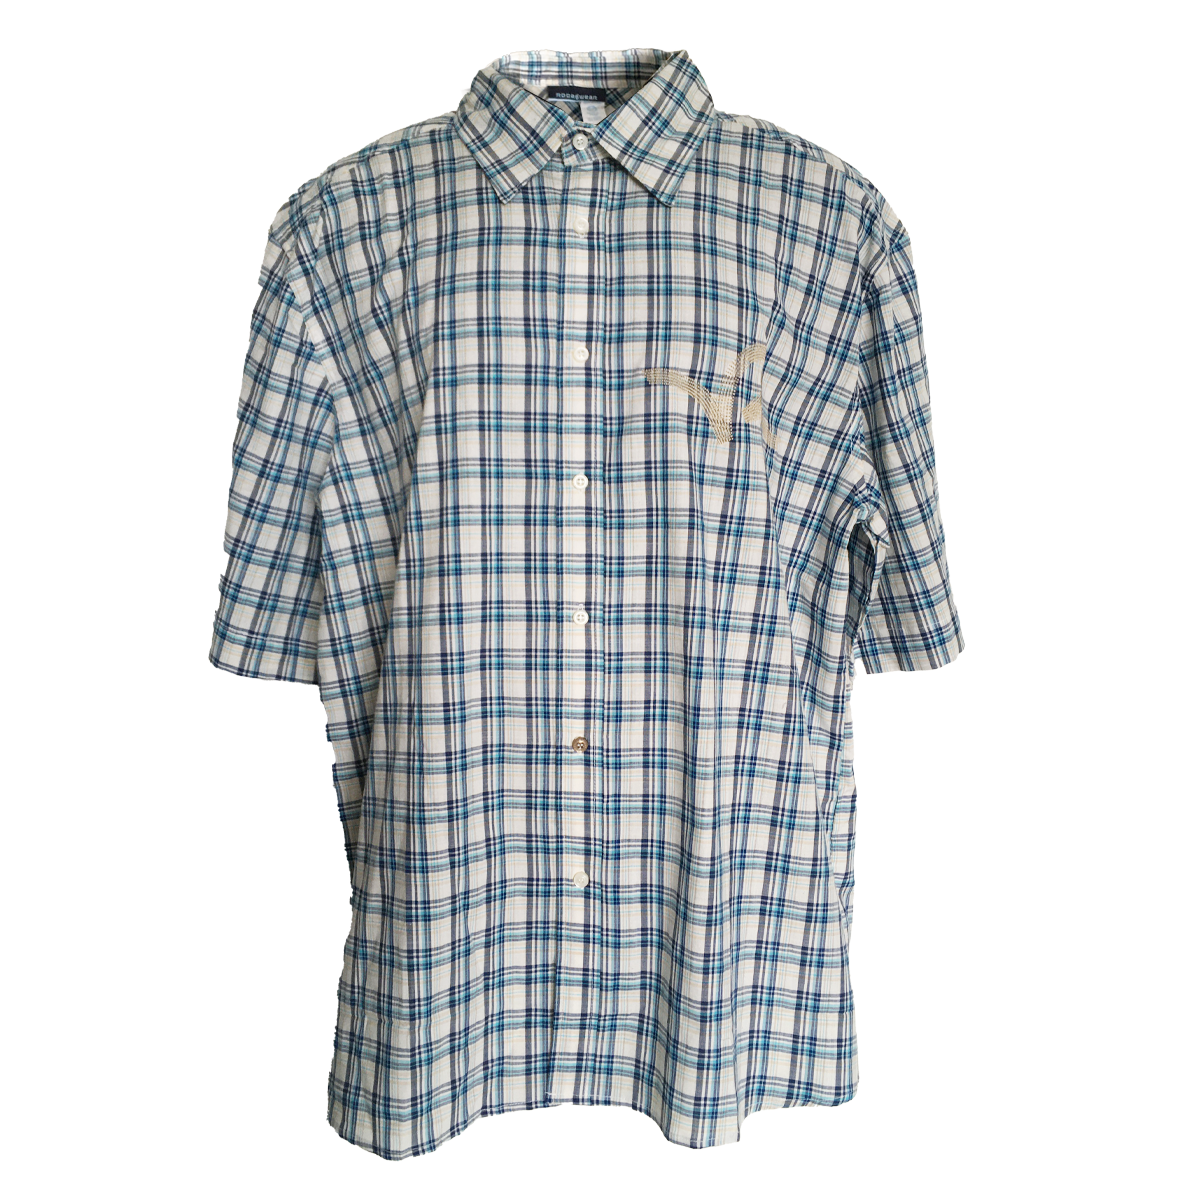 Roca Wear short sleeve cotton plaid shirt (2XL)